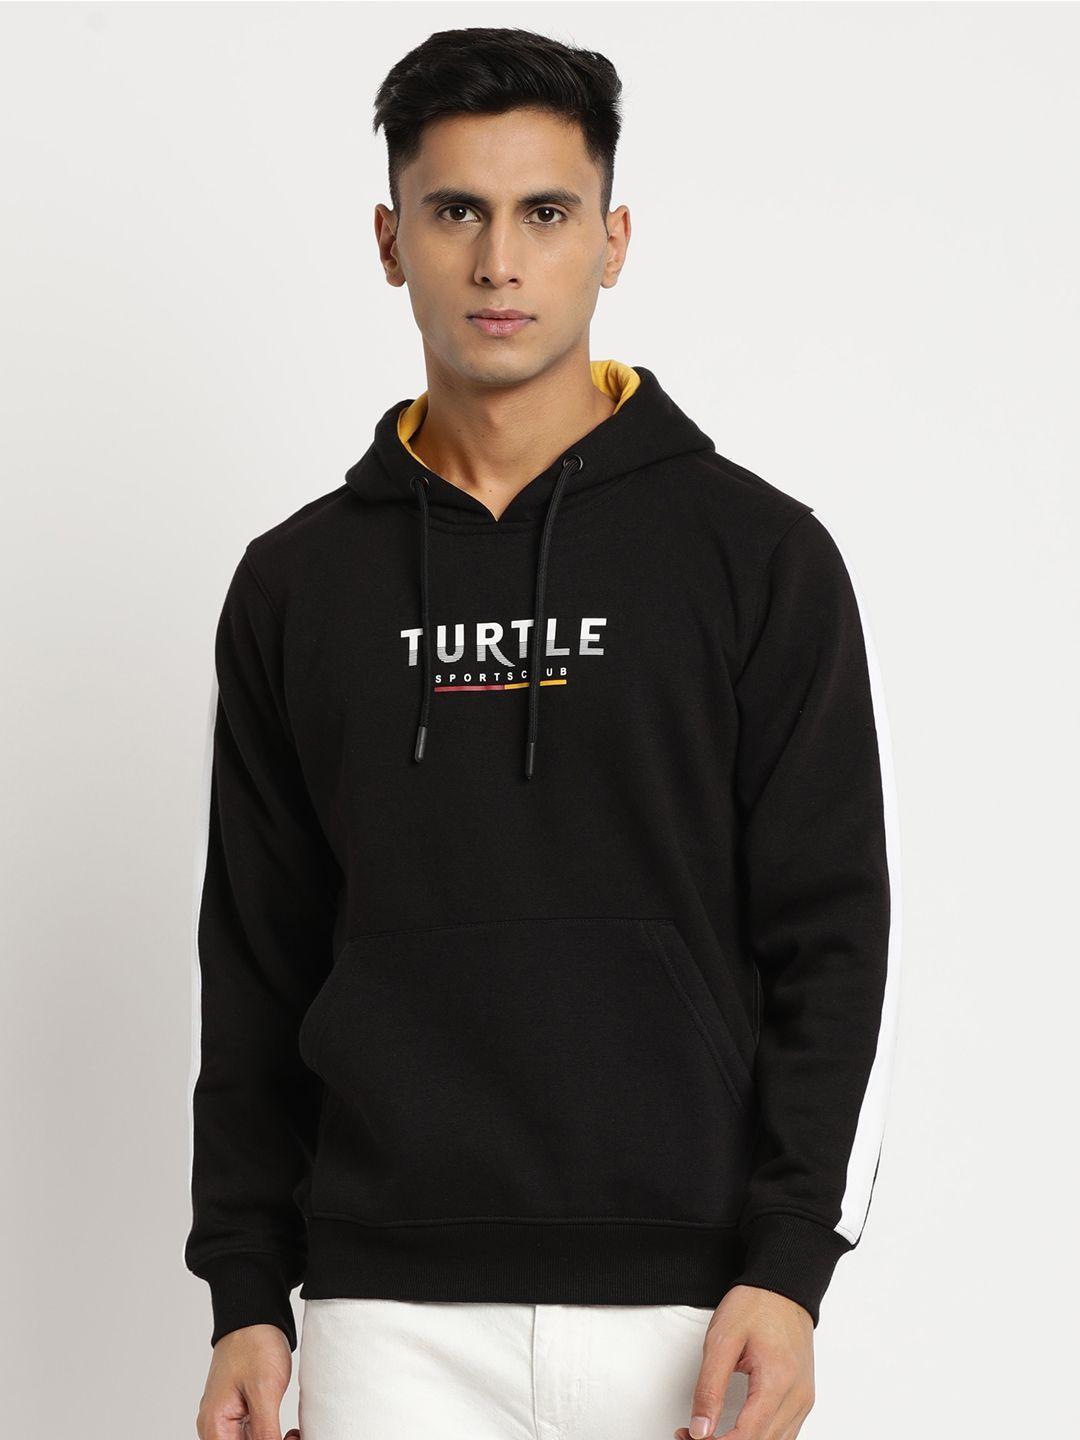 turtle men typography printed hooded pullover sweatshirt